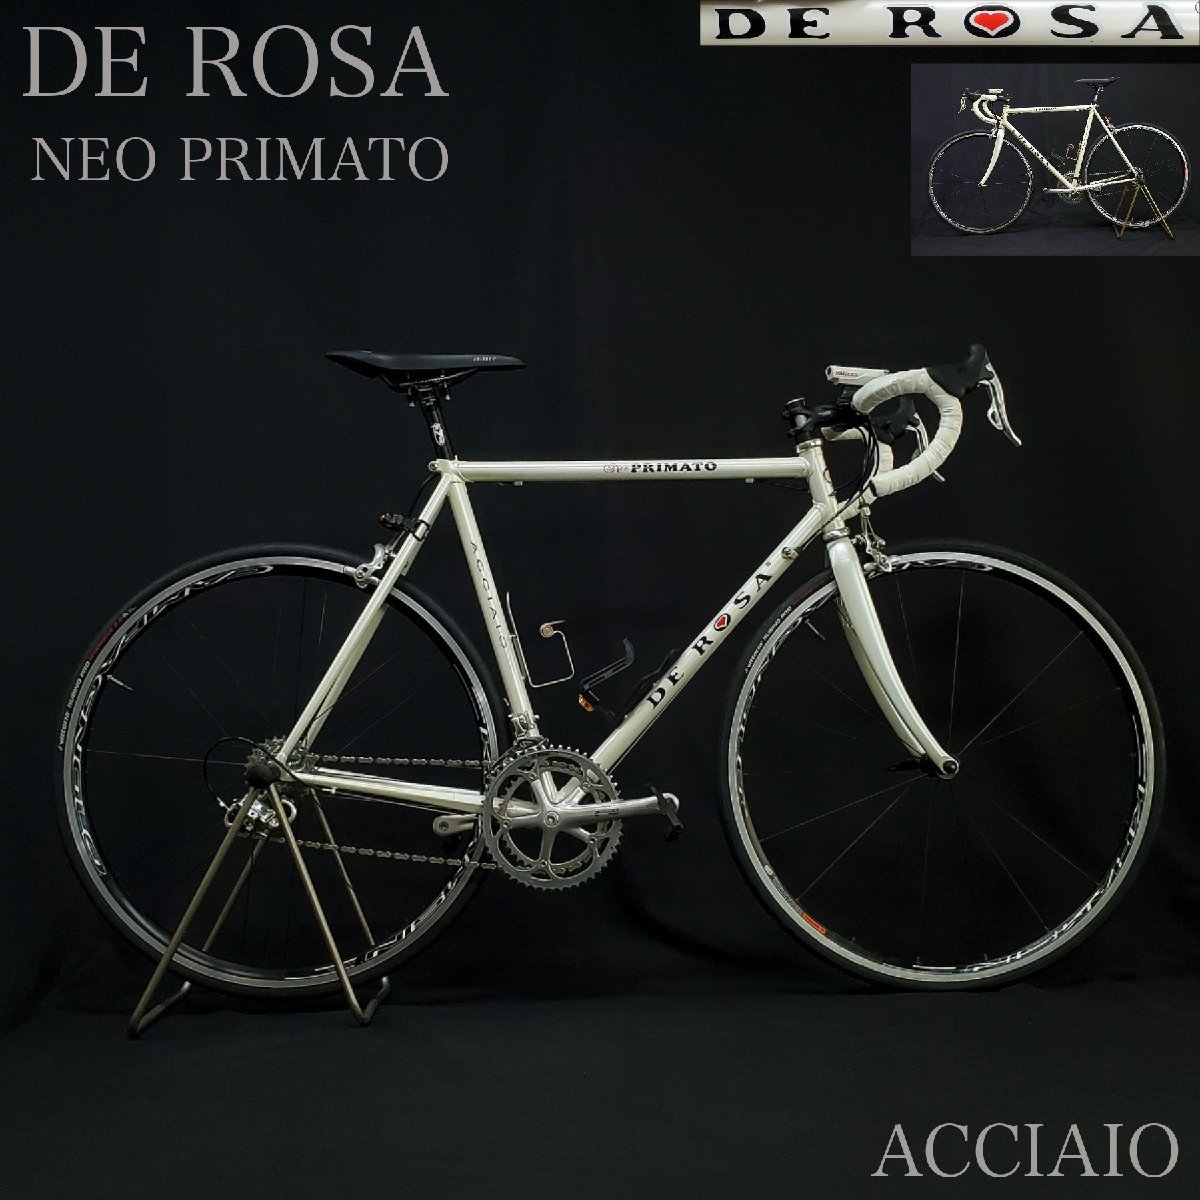 宝蔵】ロードバイク DE ROSA NEO PRIMATO ACCIAIO デローザ 